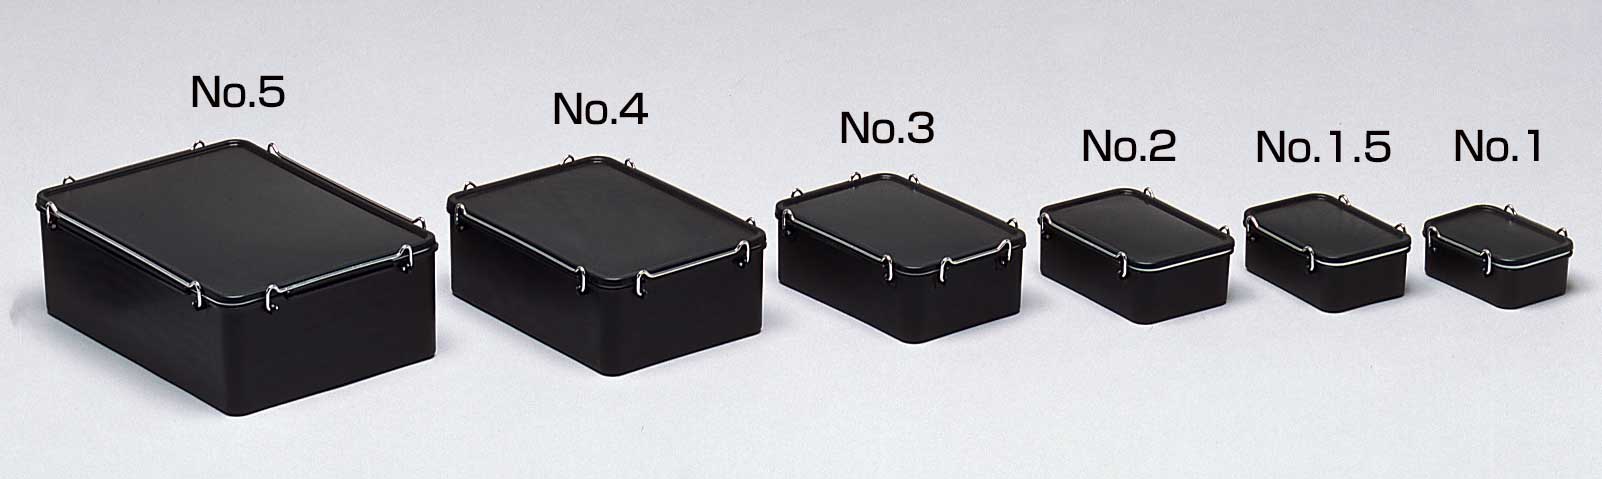 导电箱No.1L（整体尺寸（mm）：137×99×52，密封方式：封边）